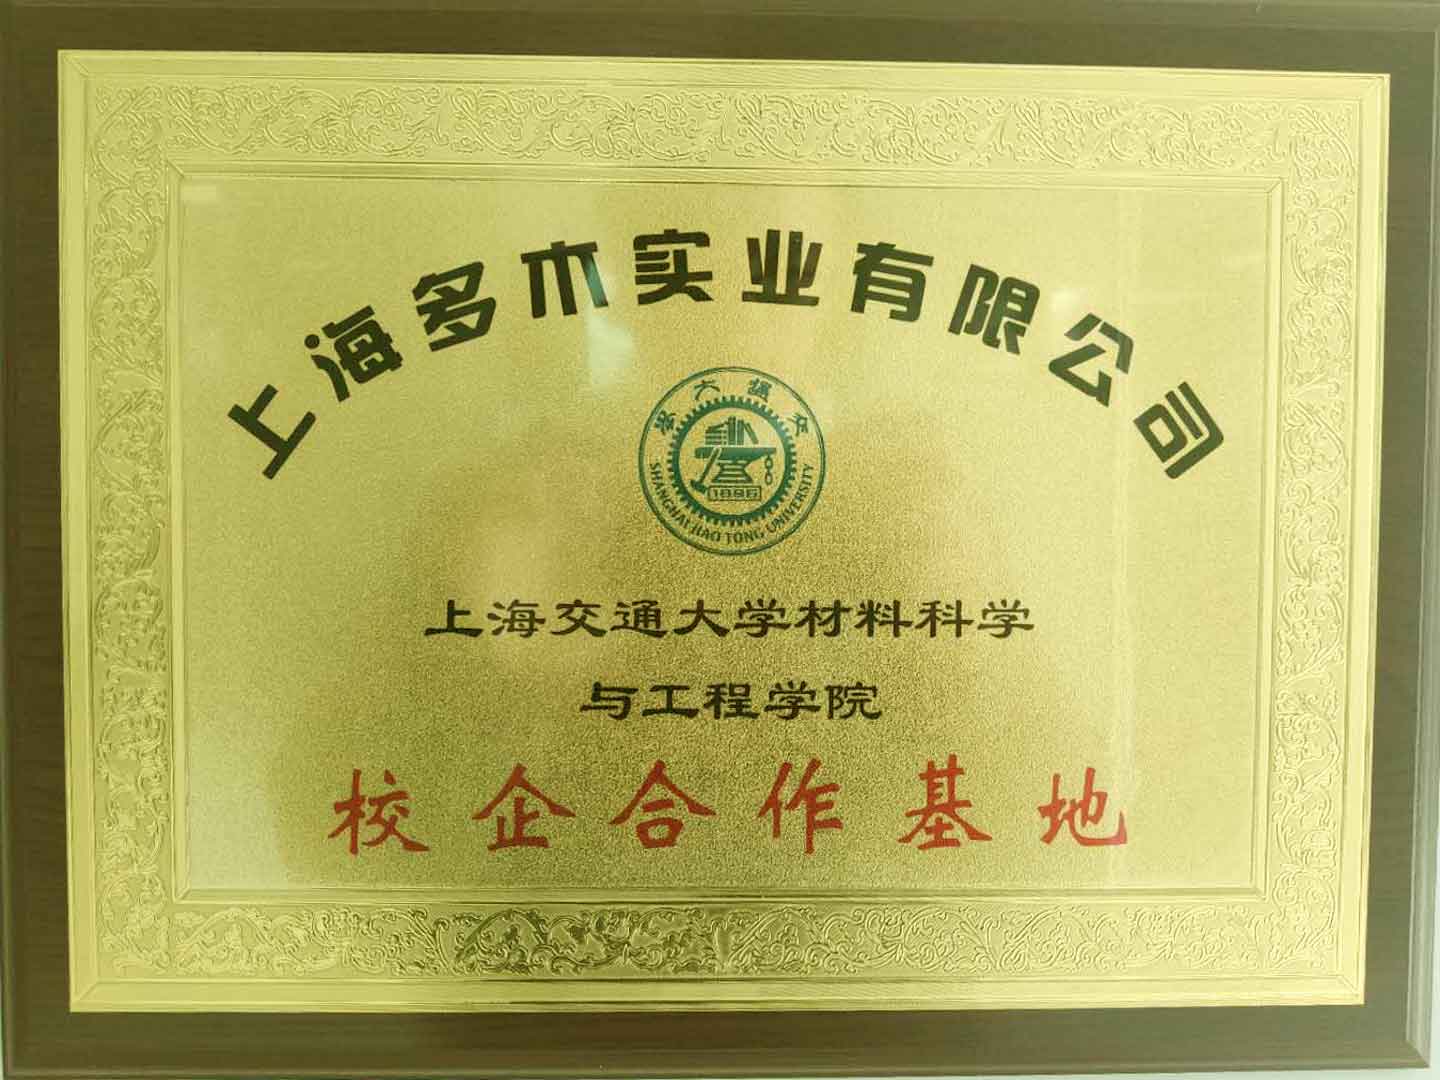 上海多木与上海交大产学研合作证书